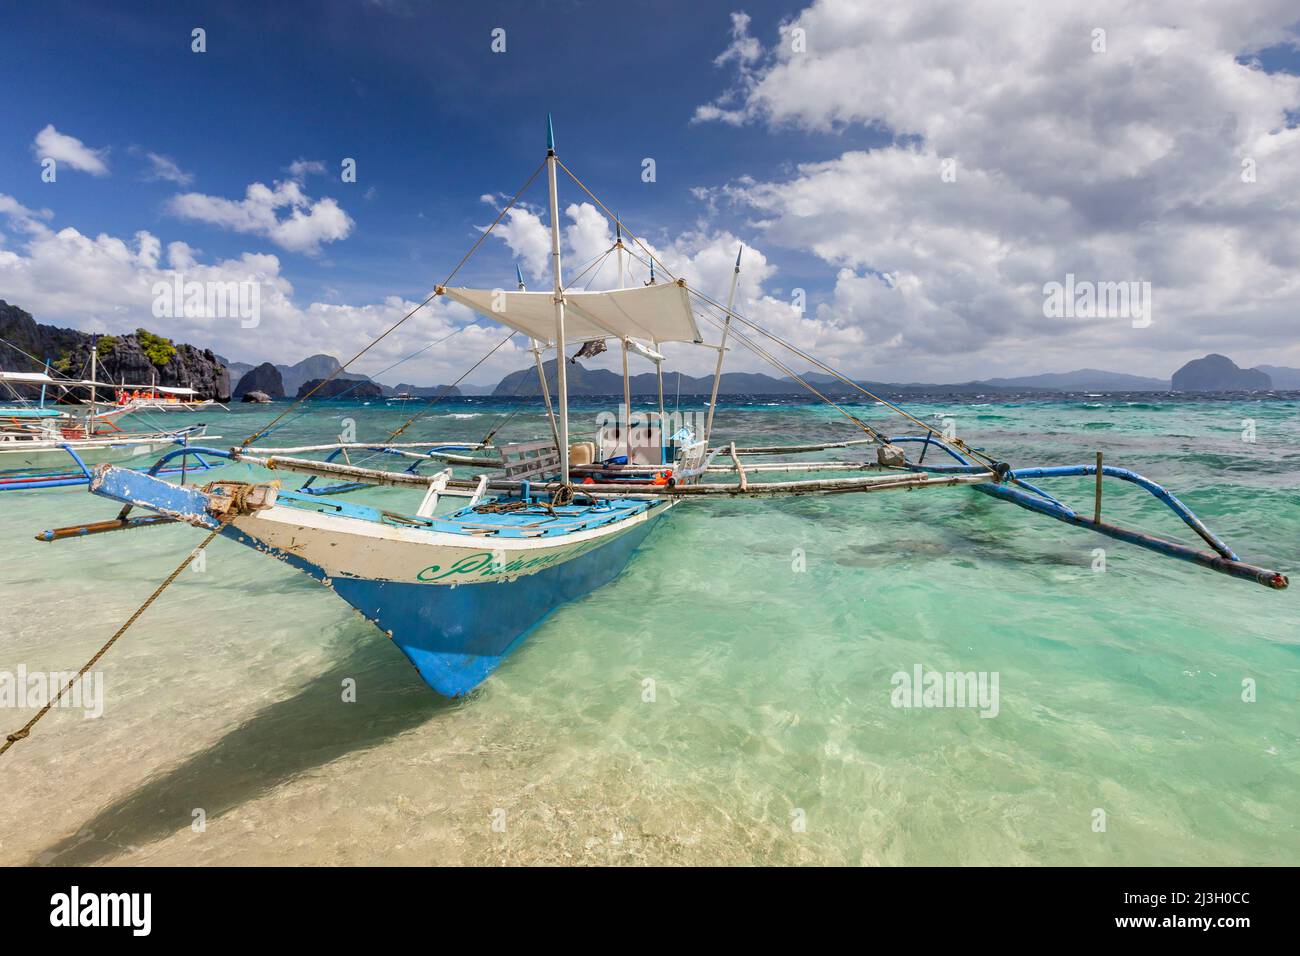 Philippinen, Palawan, El Nido, Bacuit-Archipel, Shimizu Island, outrigger Kanu auf dem türkisfarbenen und transparenten Wasser des weißen Sandstrands Stockfoto